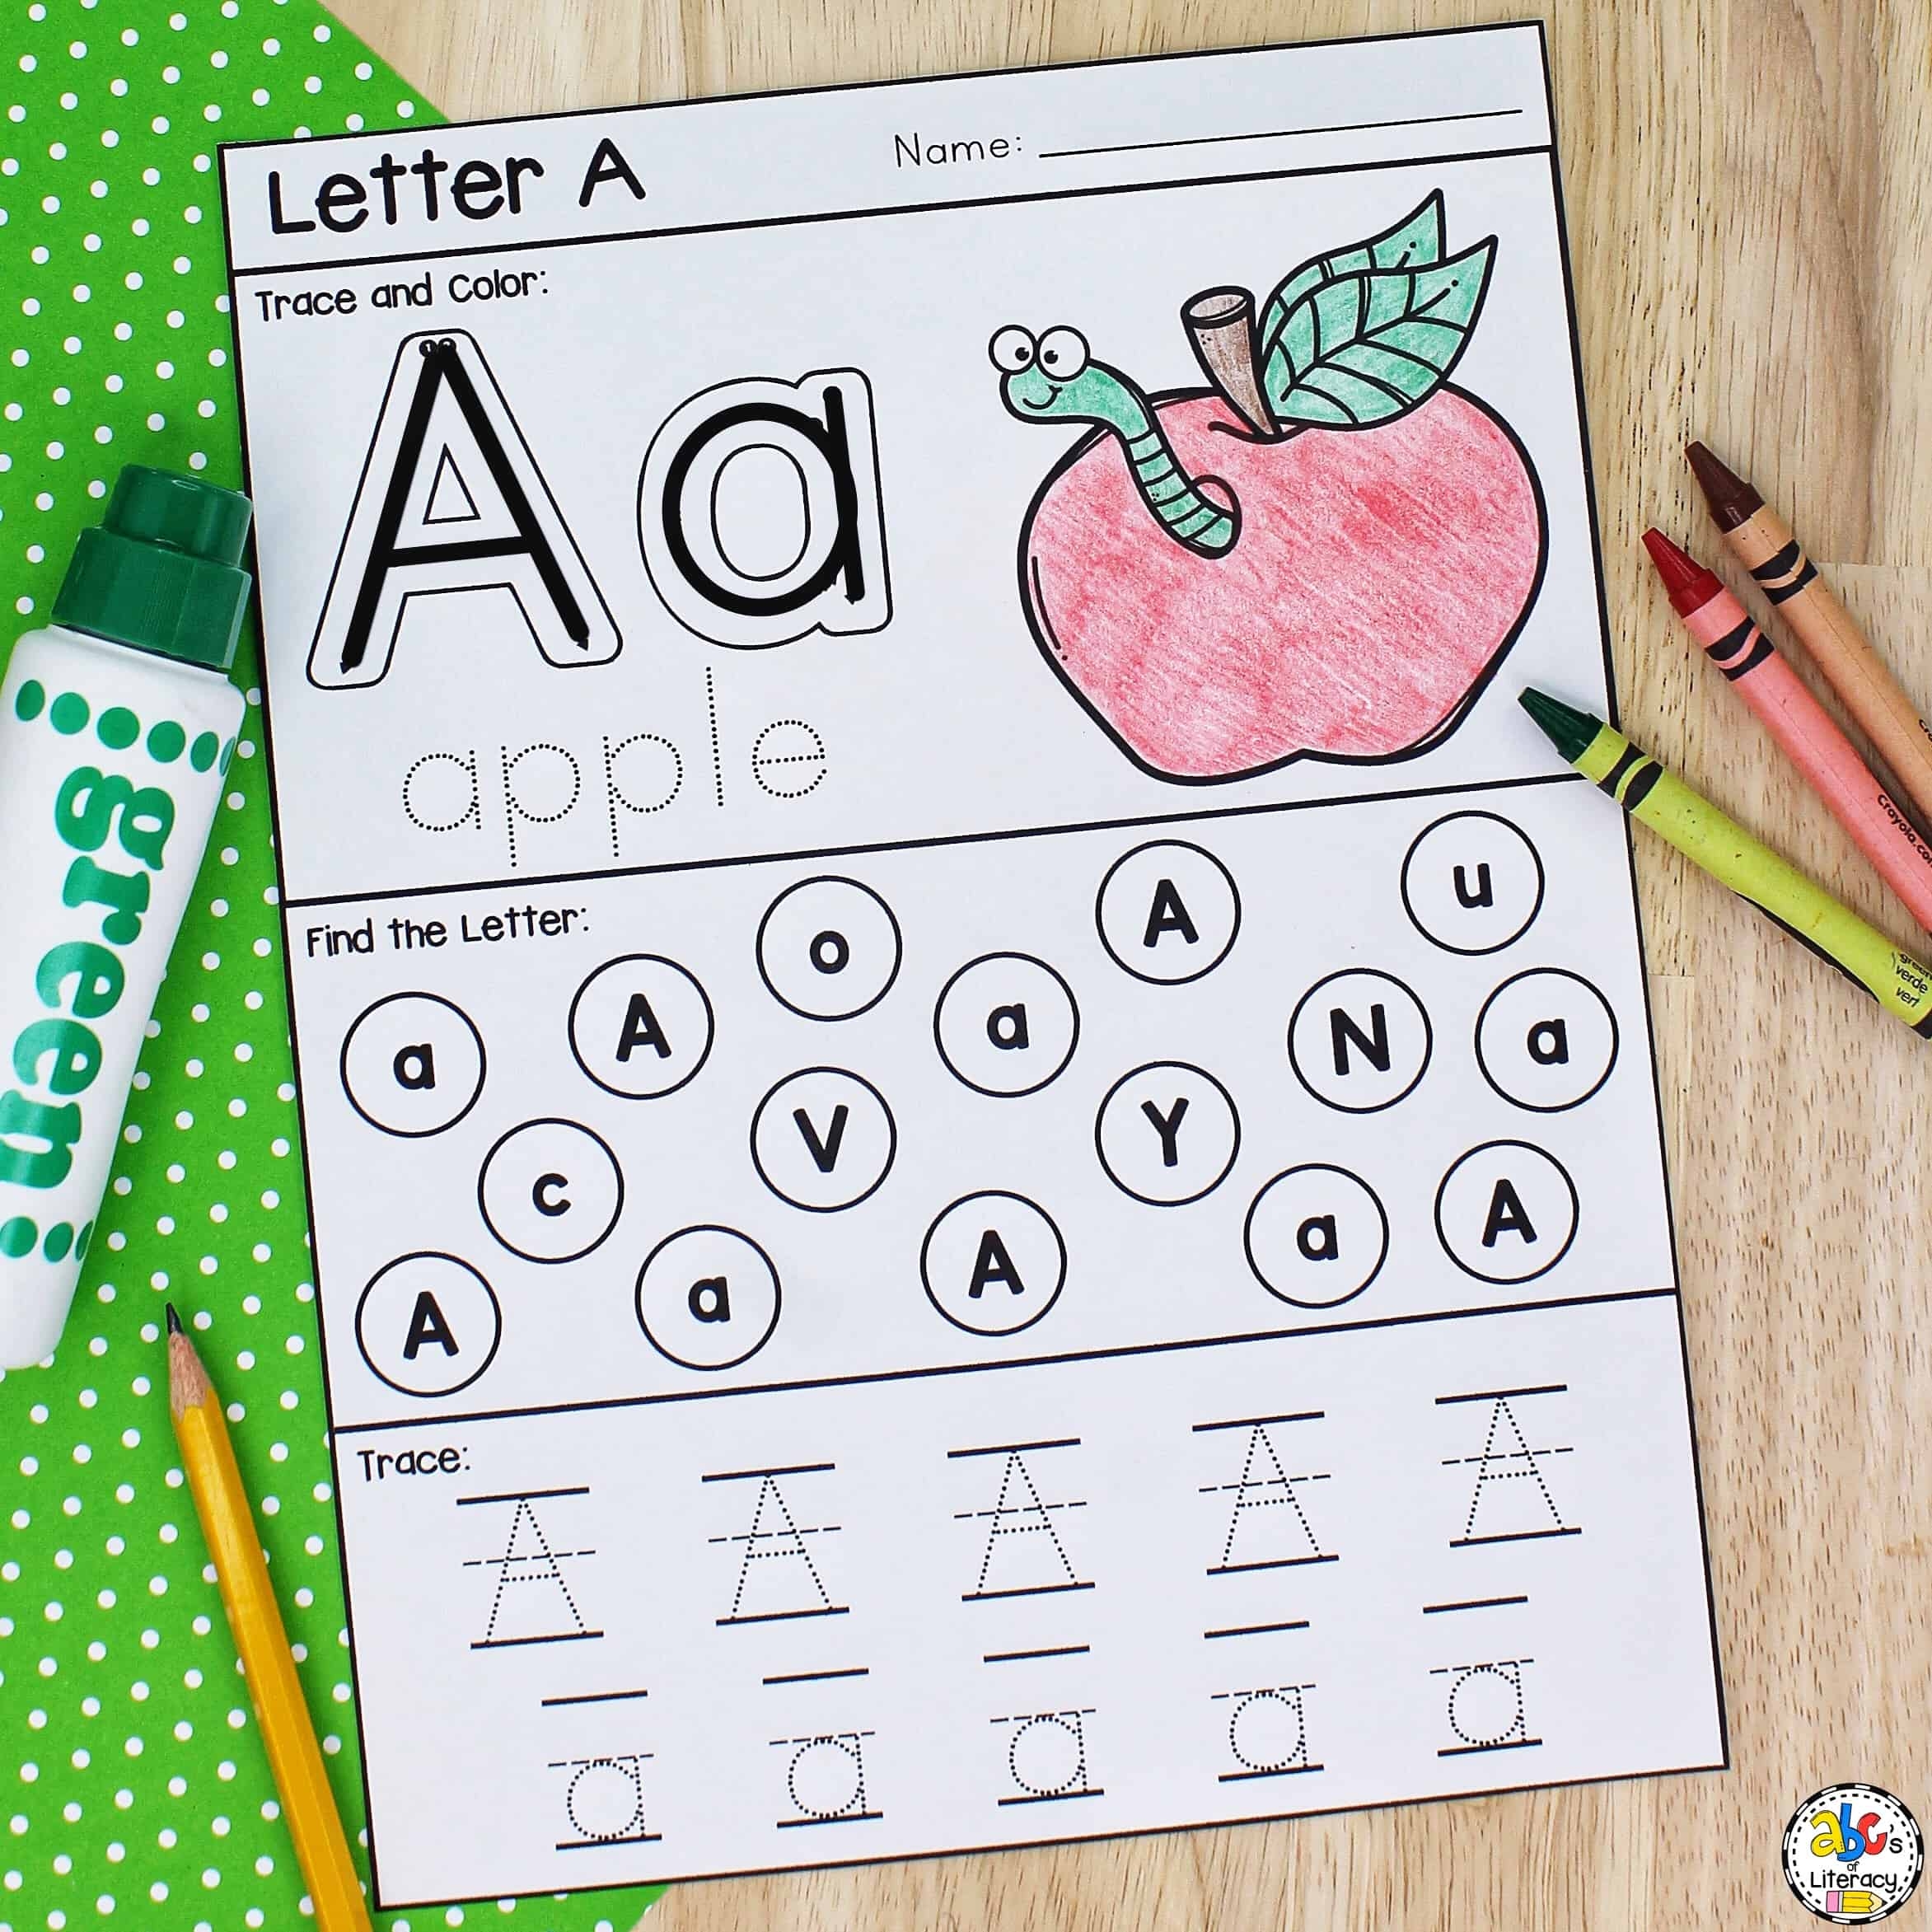 Letter A Printable Preschool Worksheet For Letter Recognition